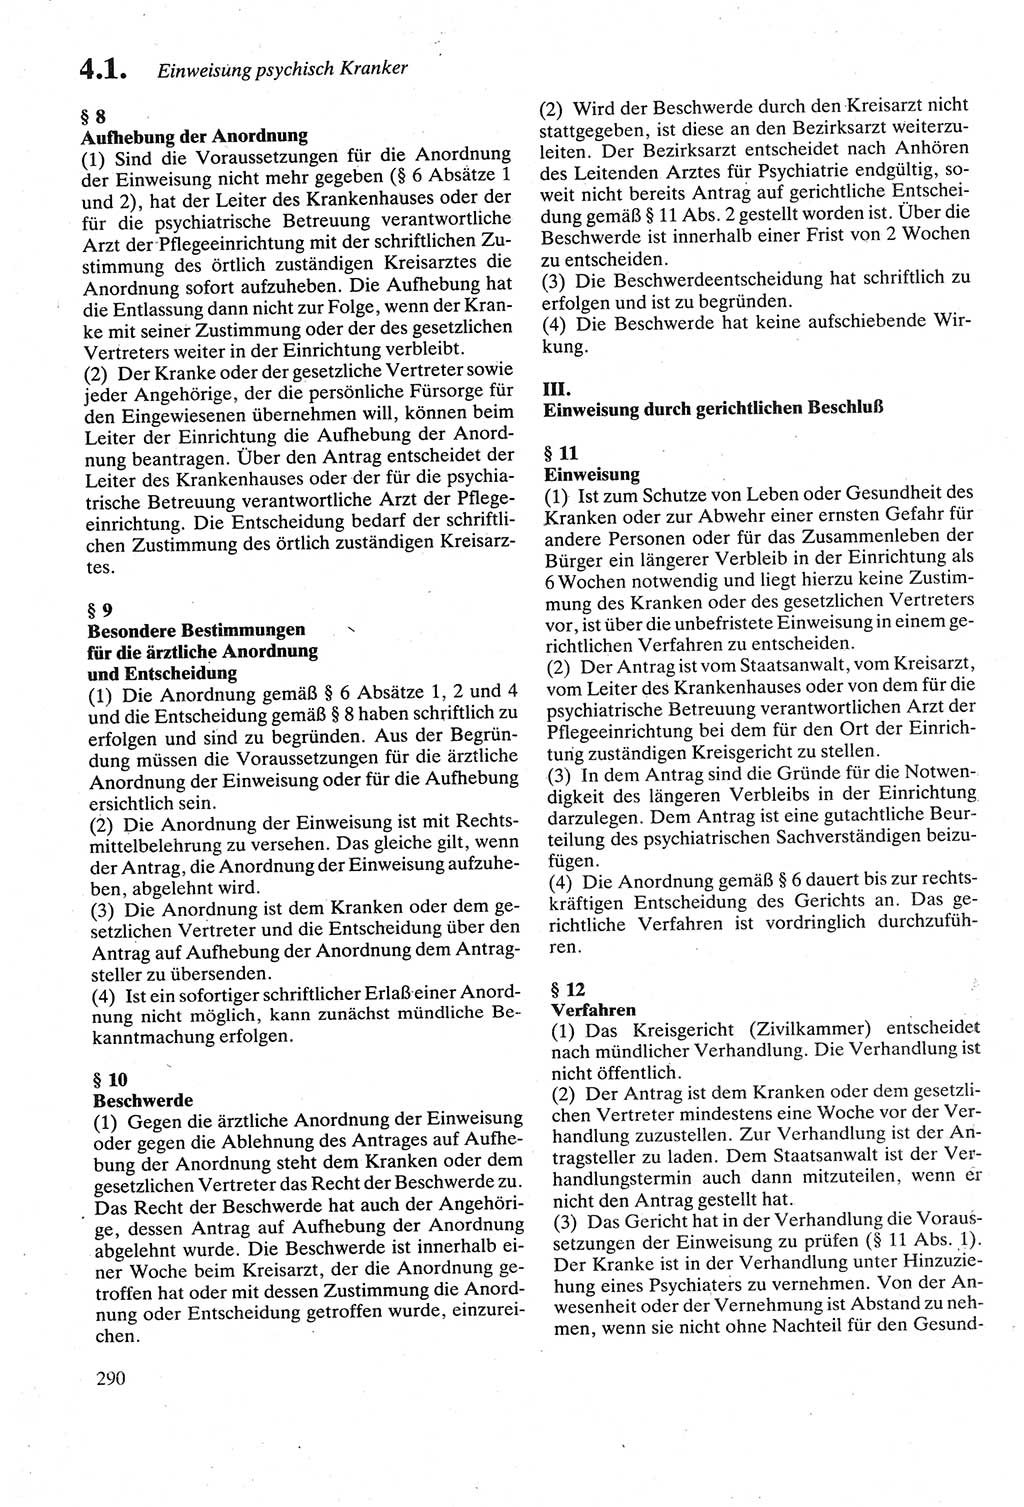 Strafgesetzbuch (StGB) der Deutschen Demokratischen Republik (DDR) sowie angrenzende Gesetze und Bestimmungen 1979, Seite 290 (StGB DDR Ges. Best. 1979, S. 290)